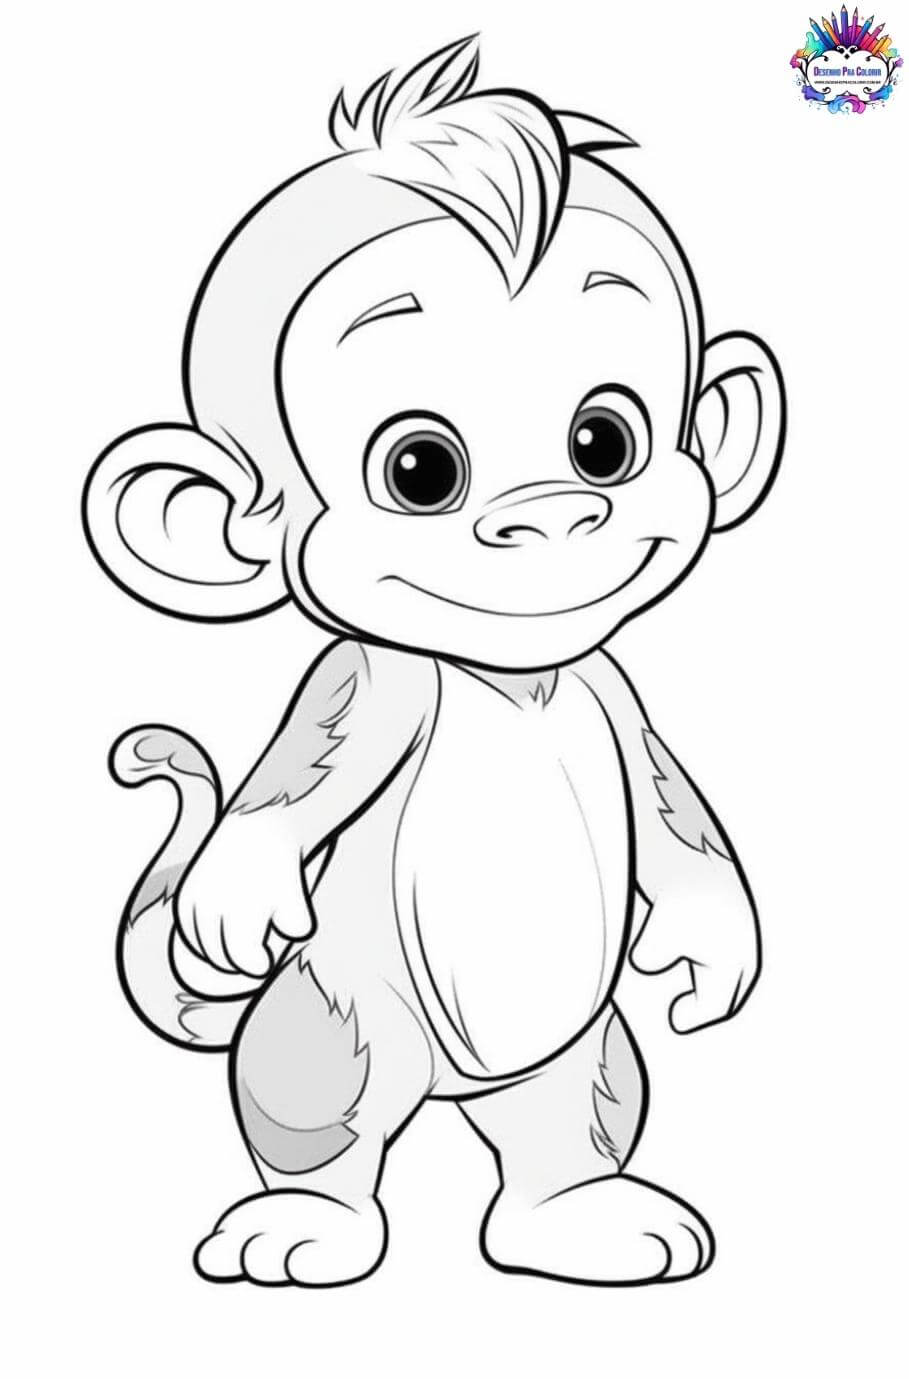 Desenho de macaco, desenho infantil para colorir - Desenhos Para Colorir